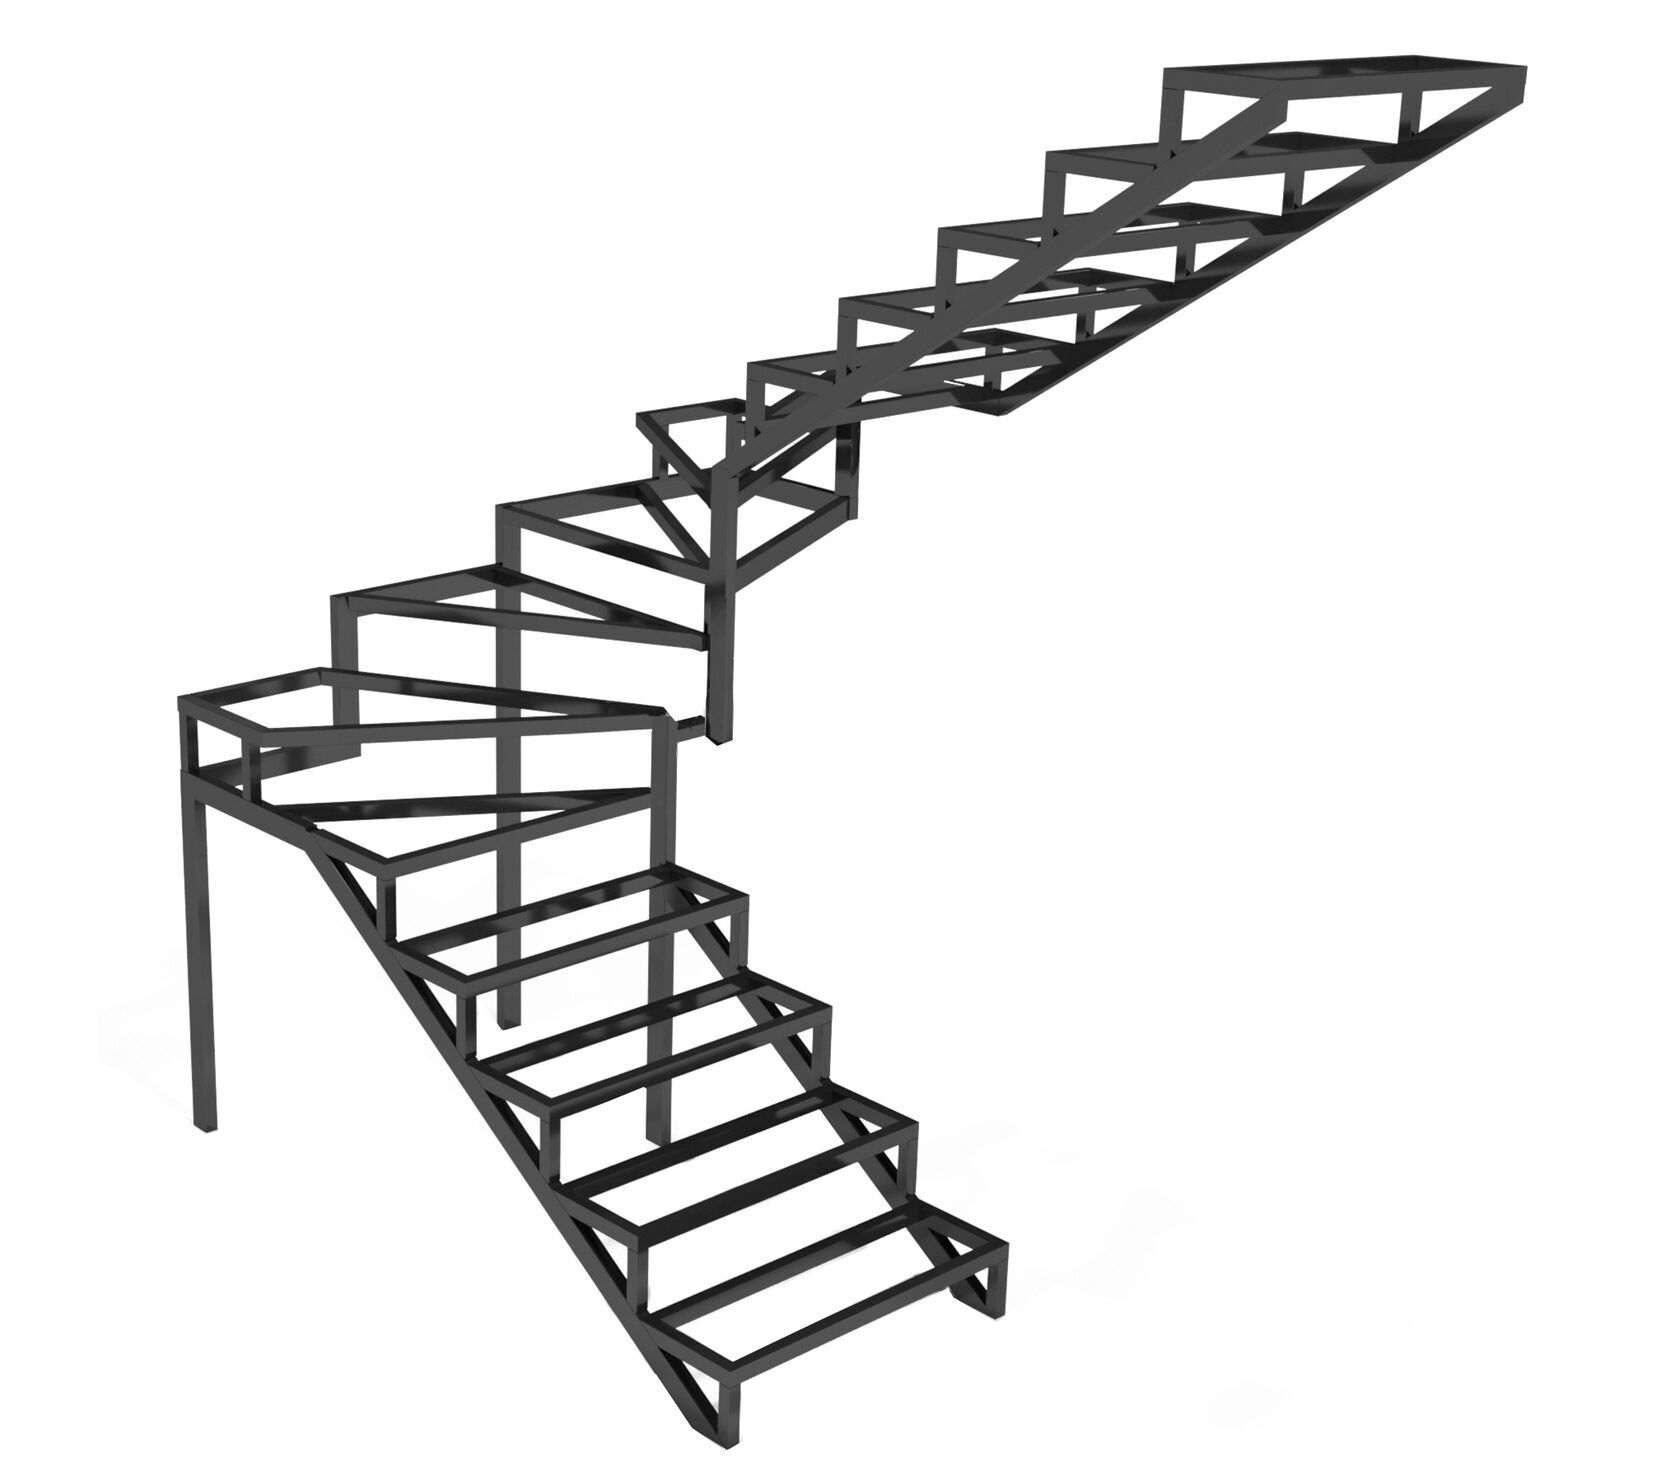 Лестница металлическая на второй цена. Лестница металл 40на40. Лестница металлокаркас поворотная 180 с забежными ступенями. Лестница из профильной трубы 100х50. Лестница с забежными ступенями на 180 из металла.